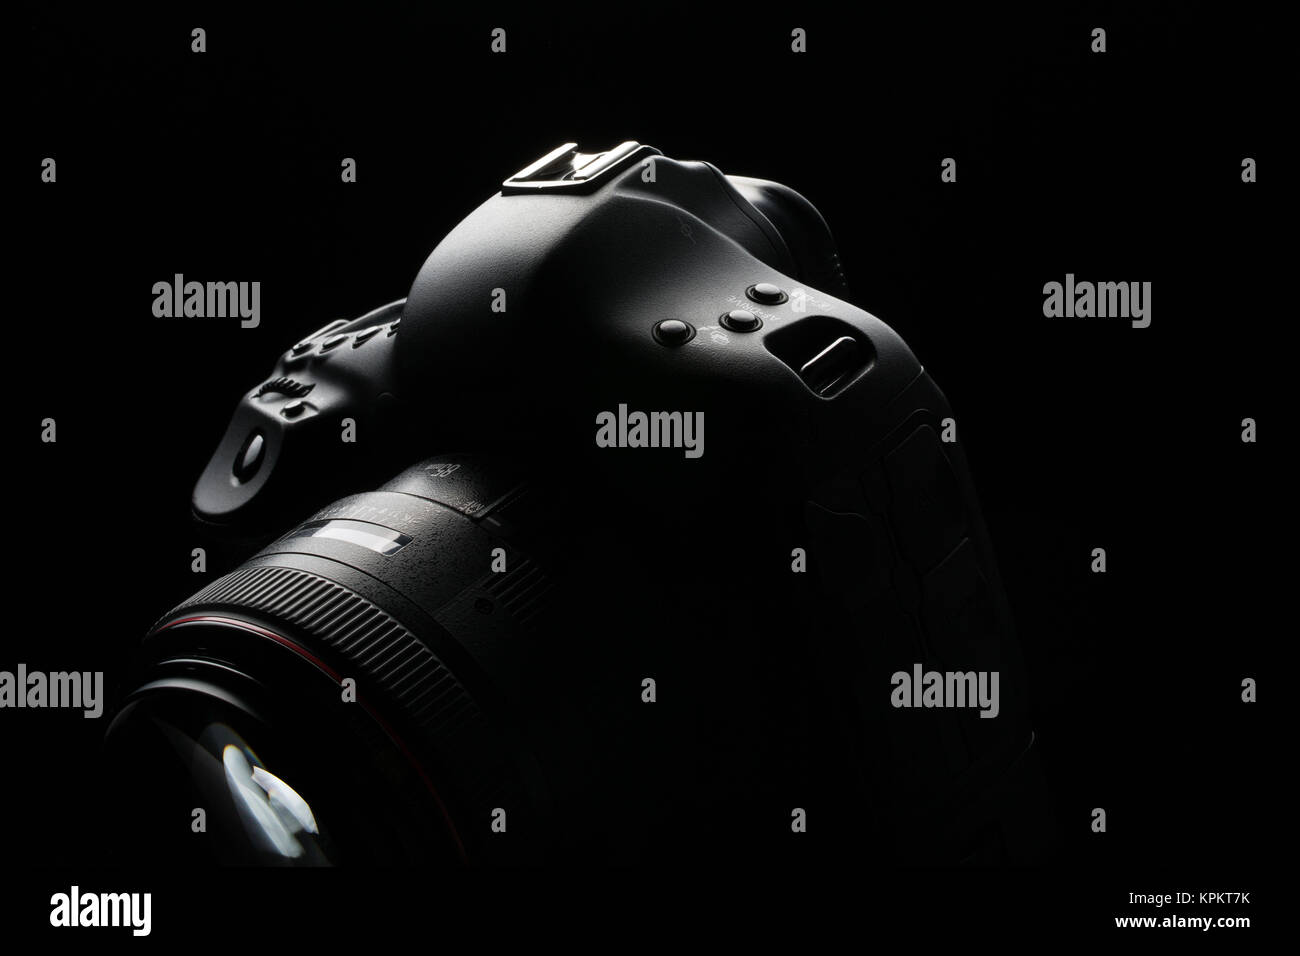 Modernas cámaras DSLR profesionales clave baja - imagen moderna cámara DSLR  con una lente de amplia apertura muy sobre Fotografía de stock - Alamy